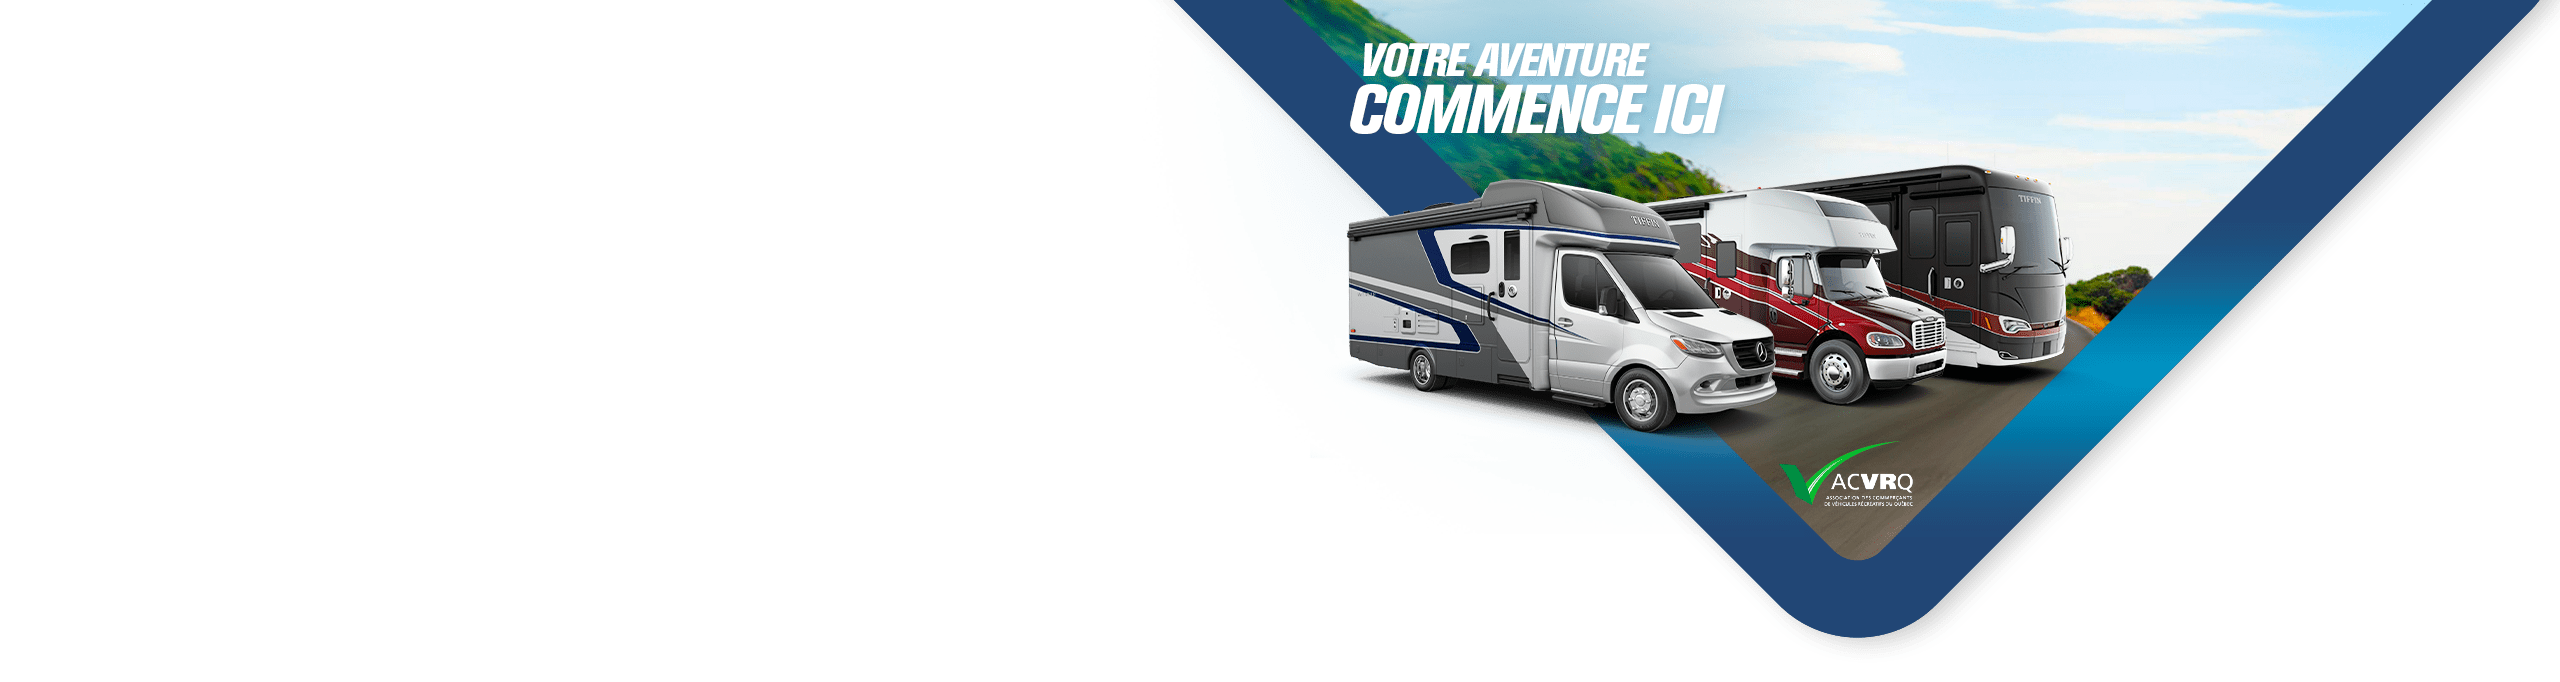 slider-horizon-lussier-aventure-v9b-FR-min